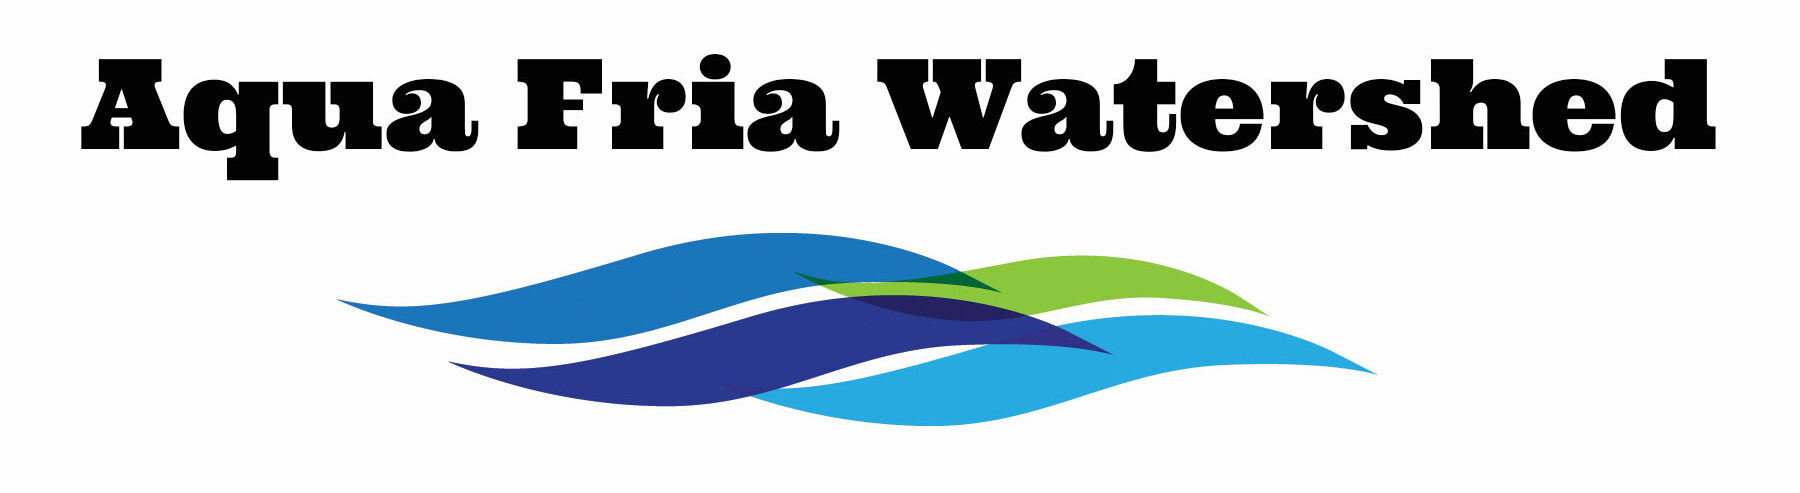 AguaFria Watershed